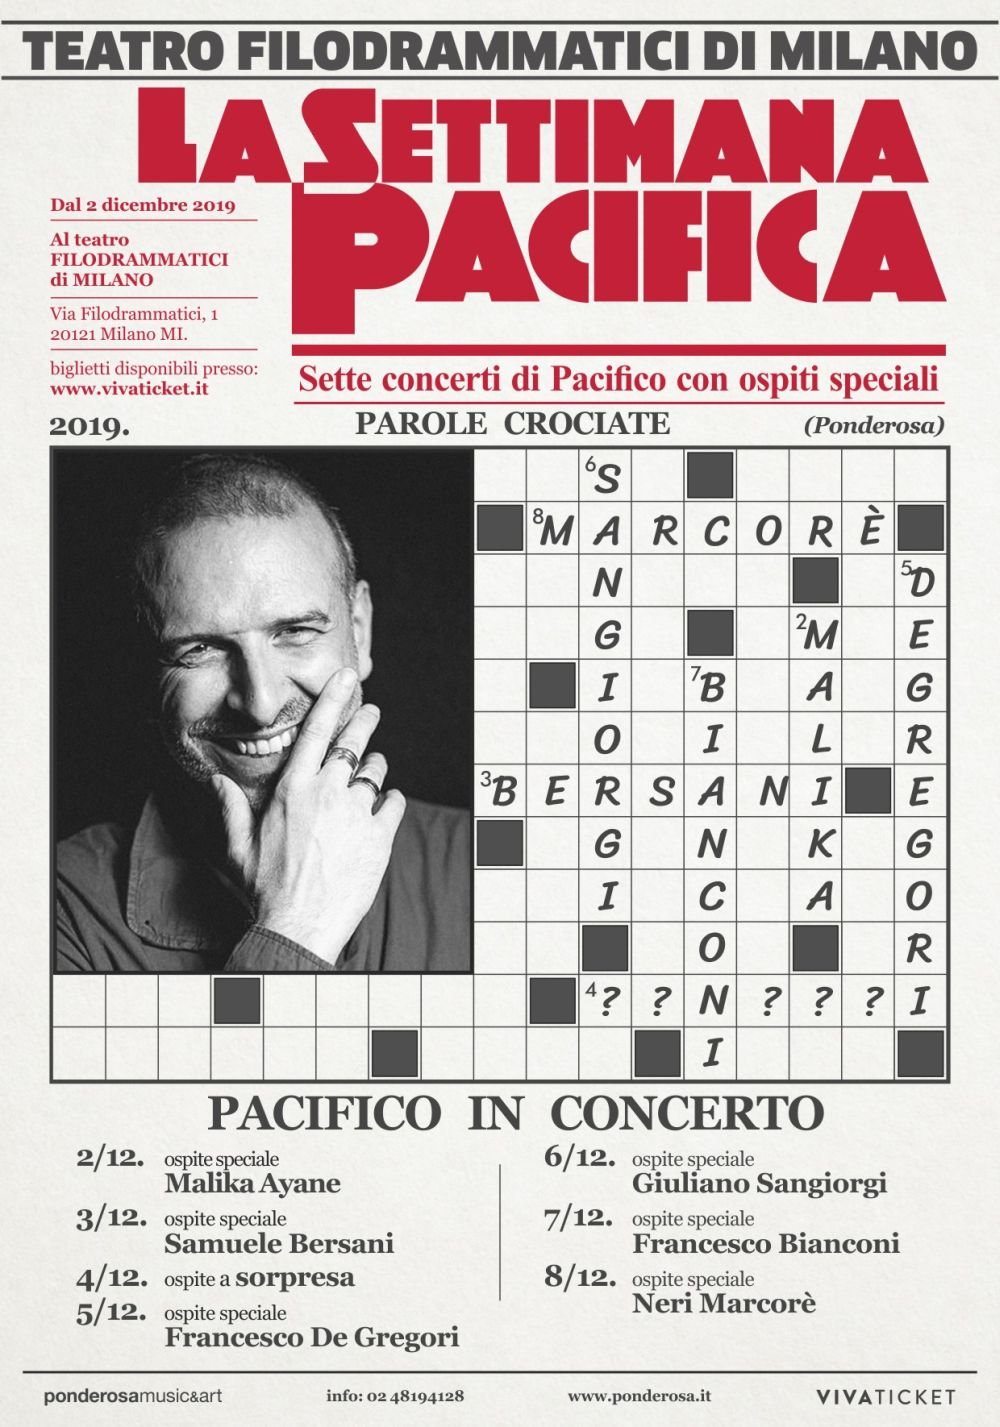 La Settimana Pacifica. 7 concerti in 7 giorni a Milano con Pacifico